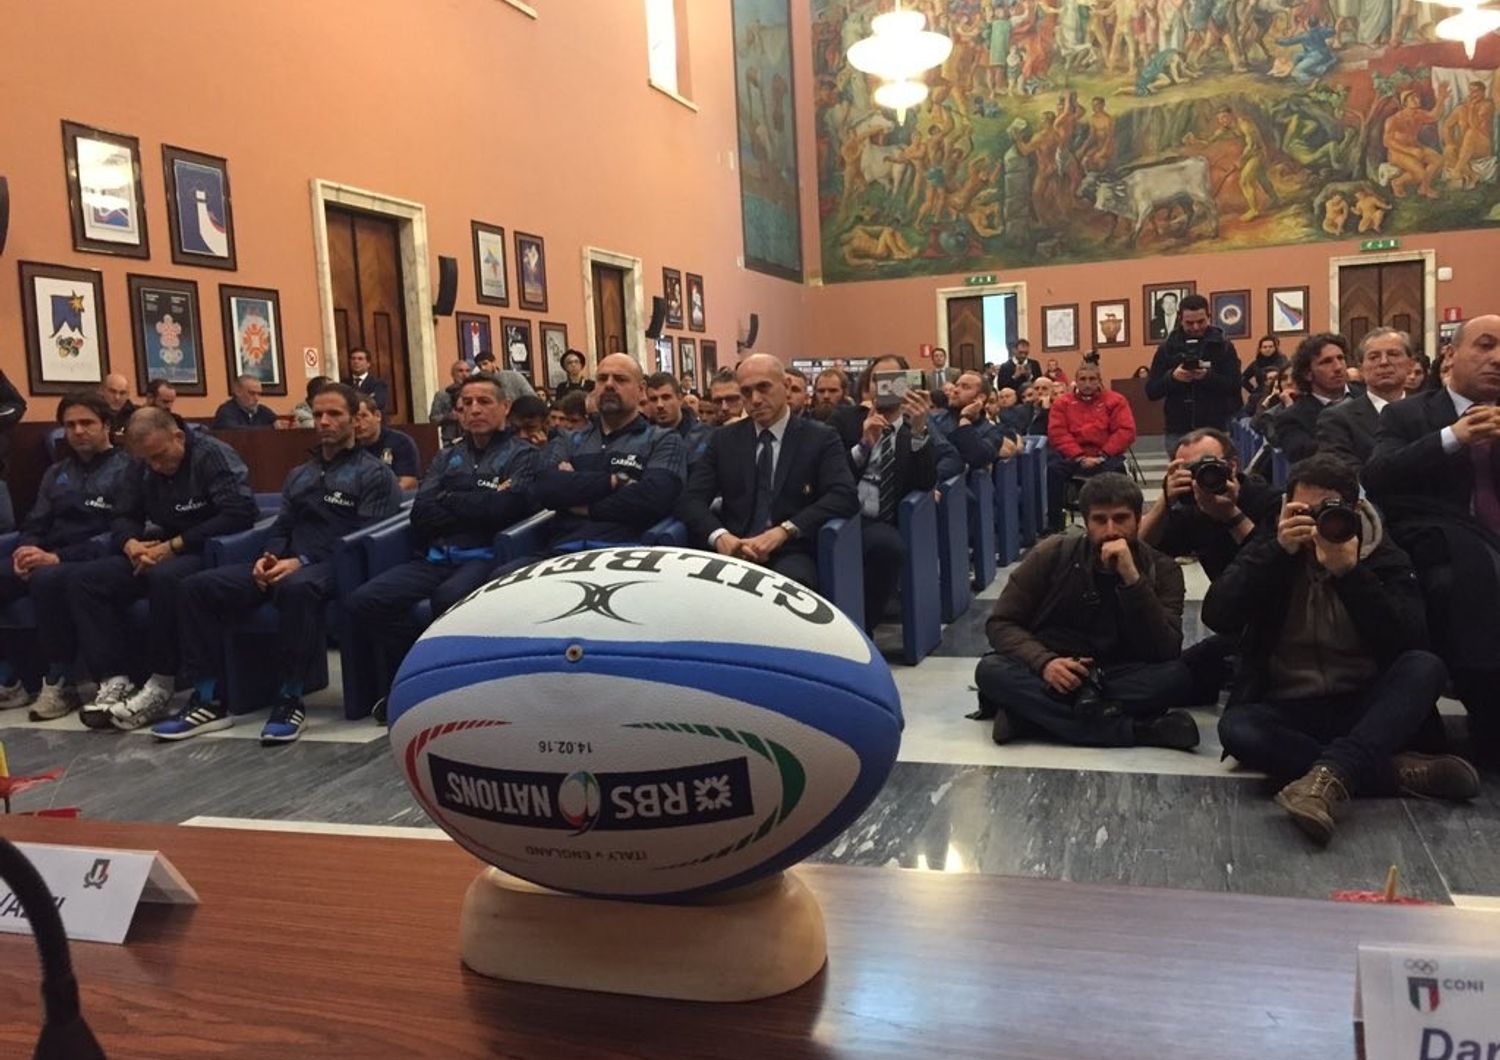 &nbsp;Rugby rbs 6 nazioni 2016 e Franceschini ministero beni culturali - twitter